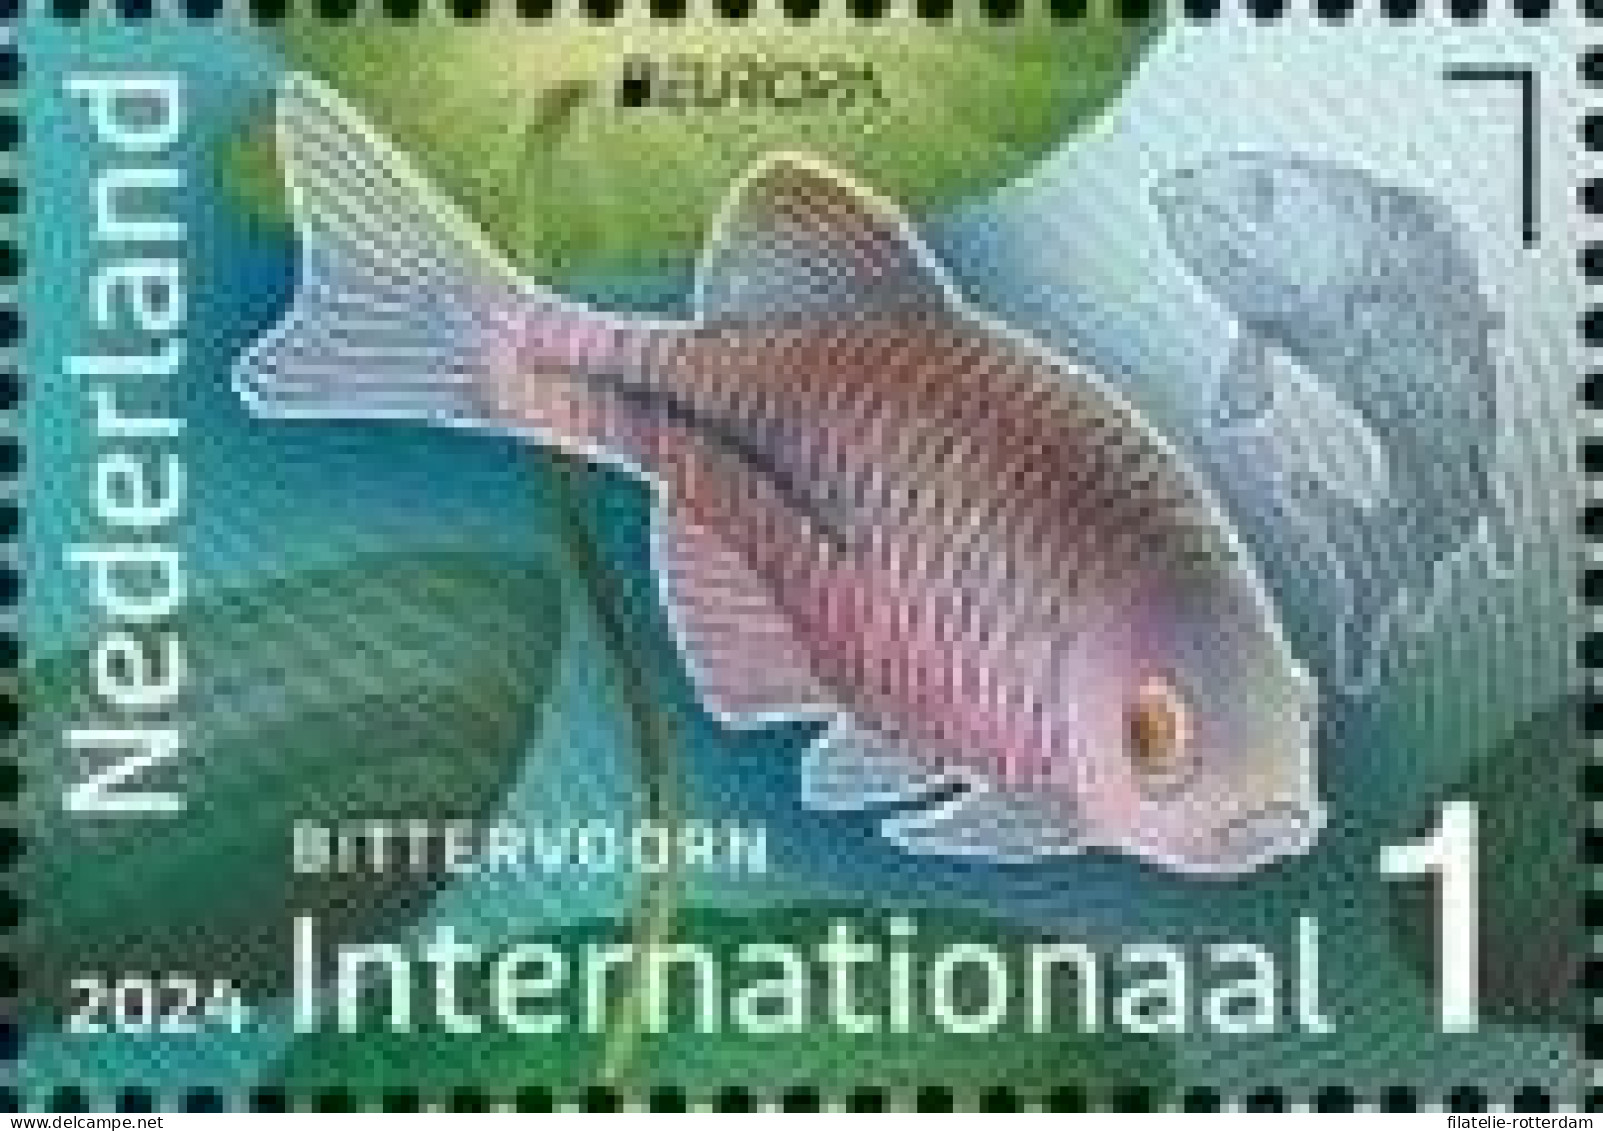 The Netherlands / Nederland - Postfris / MNH - Europa, Underwater World 2024 - Unused Stamps